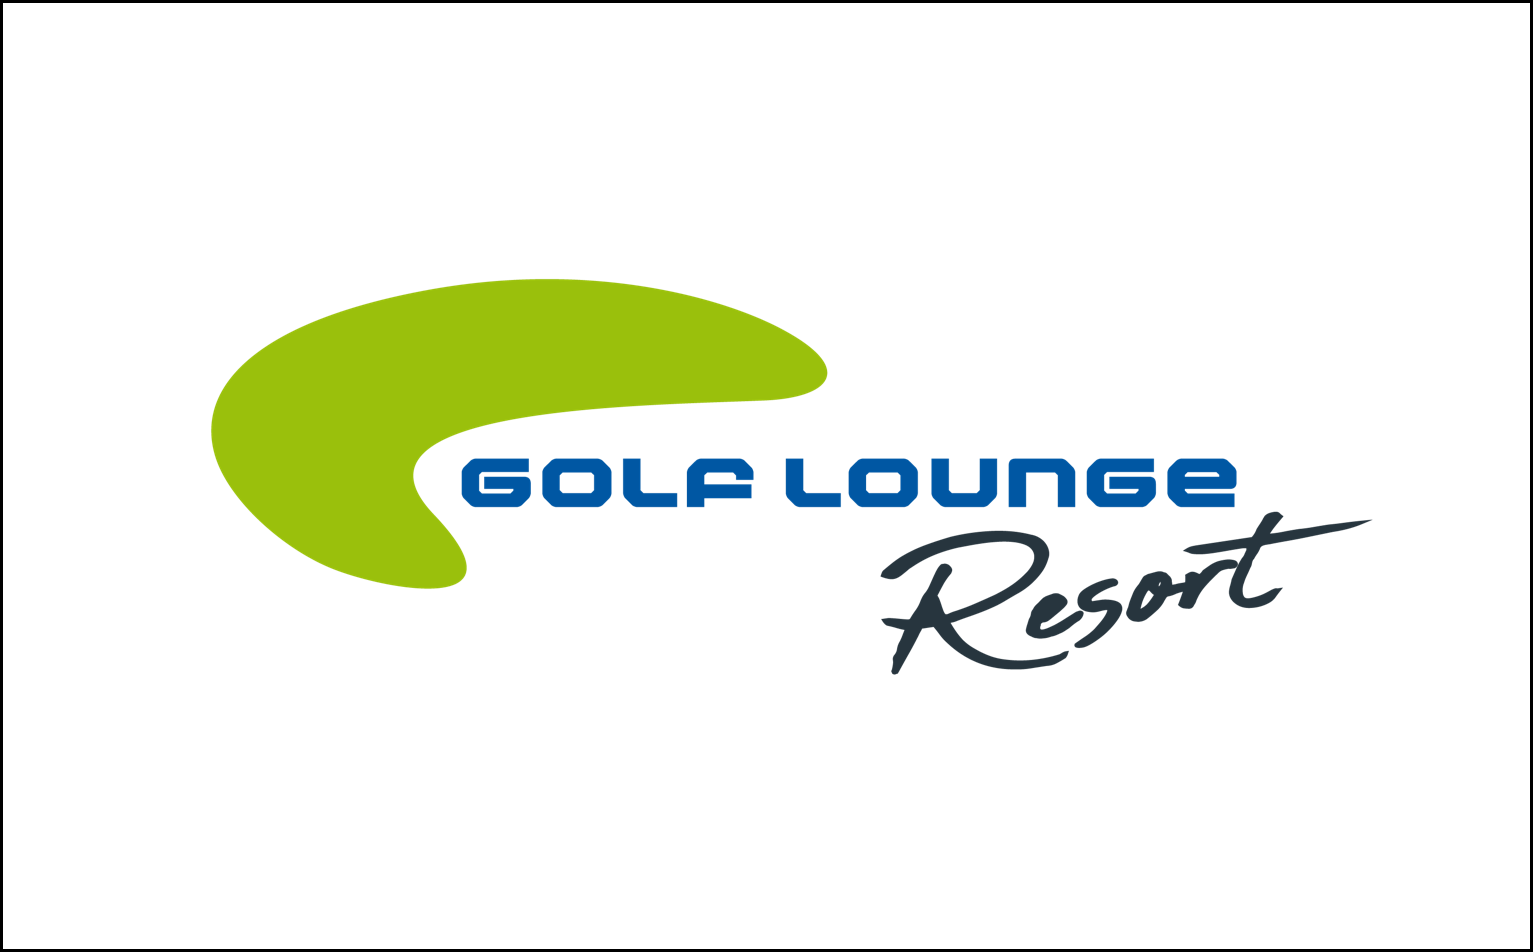 FRIEDERBARTH Golflounge Resort Hamburg Logo